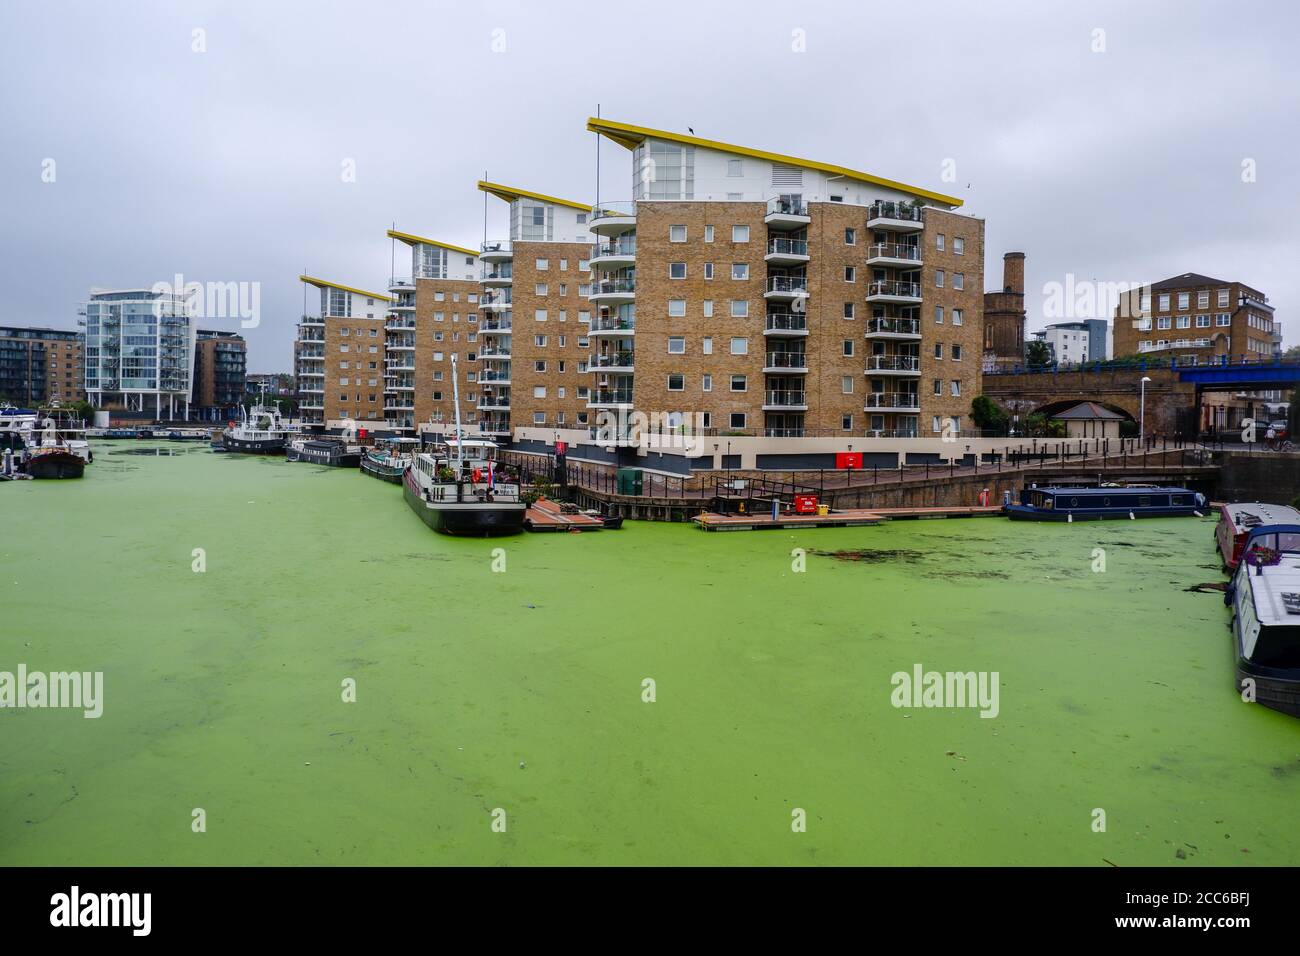 Blaualgen im Limehouse Basin im Osten Londons sind ein Docklands Marina und Wohnimmobilien Entwicklung im Borough of Tower Hamlets Stockfoto